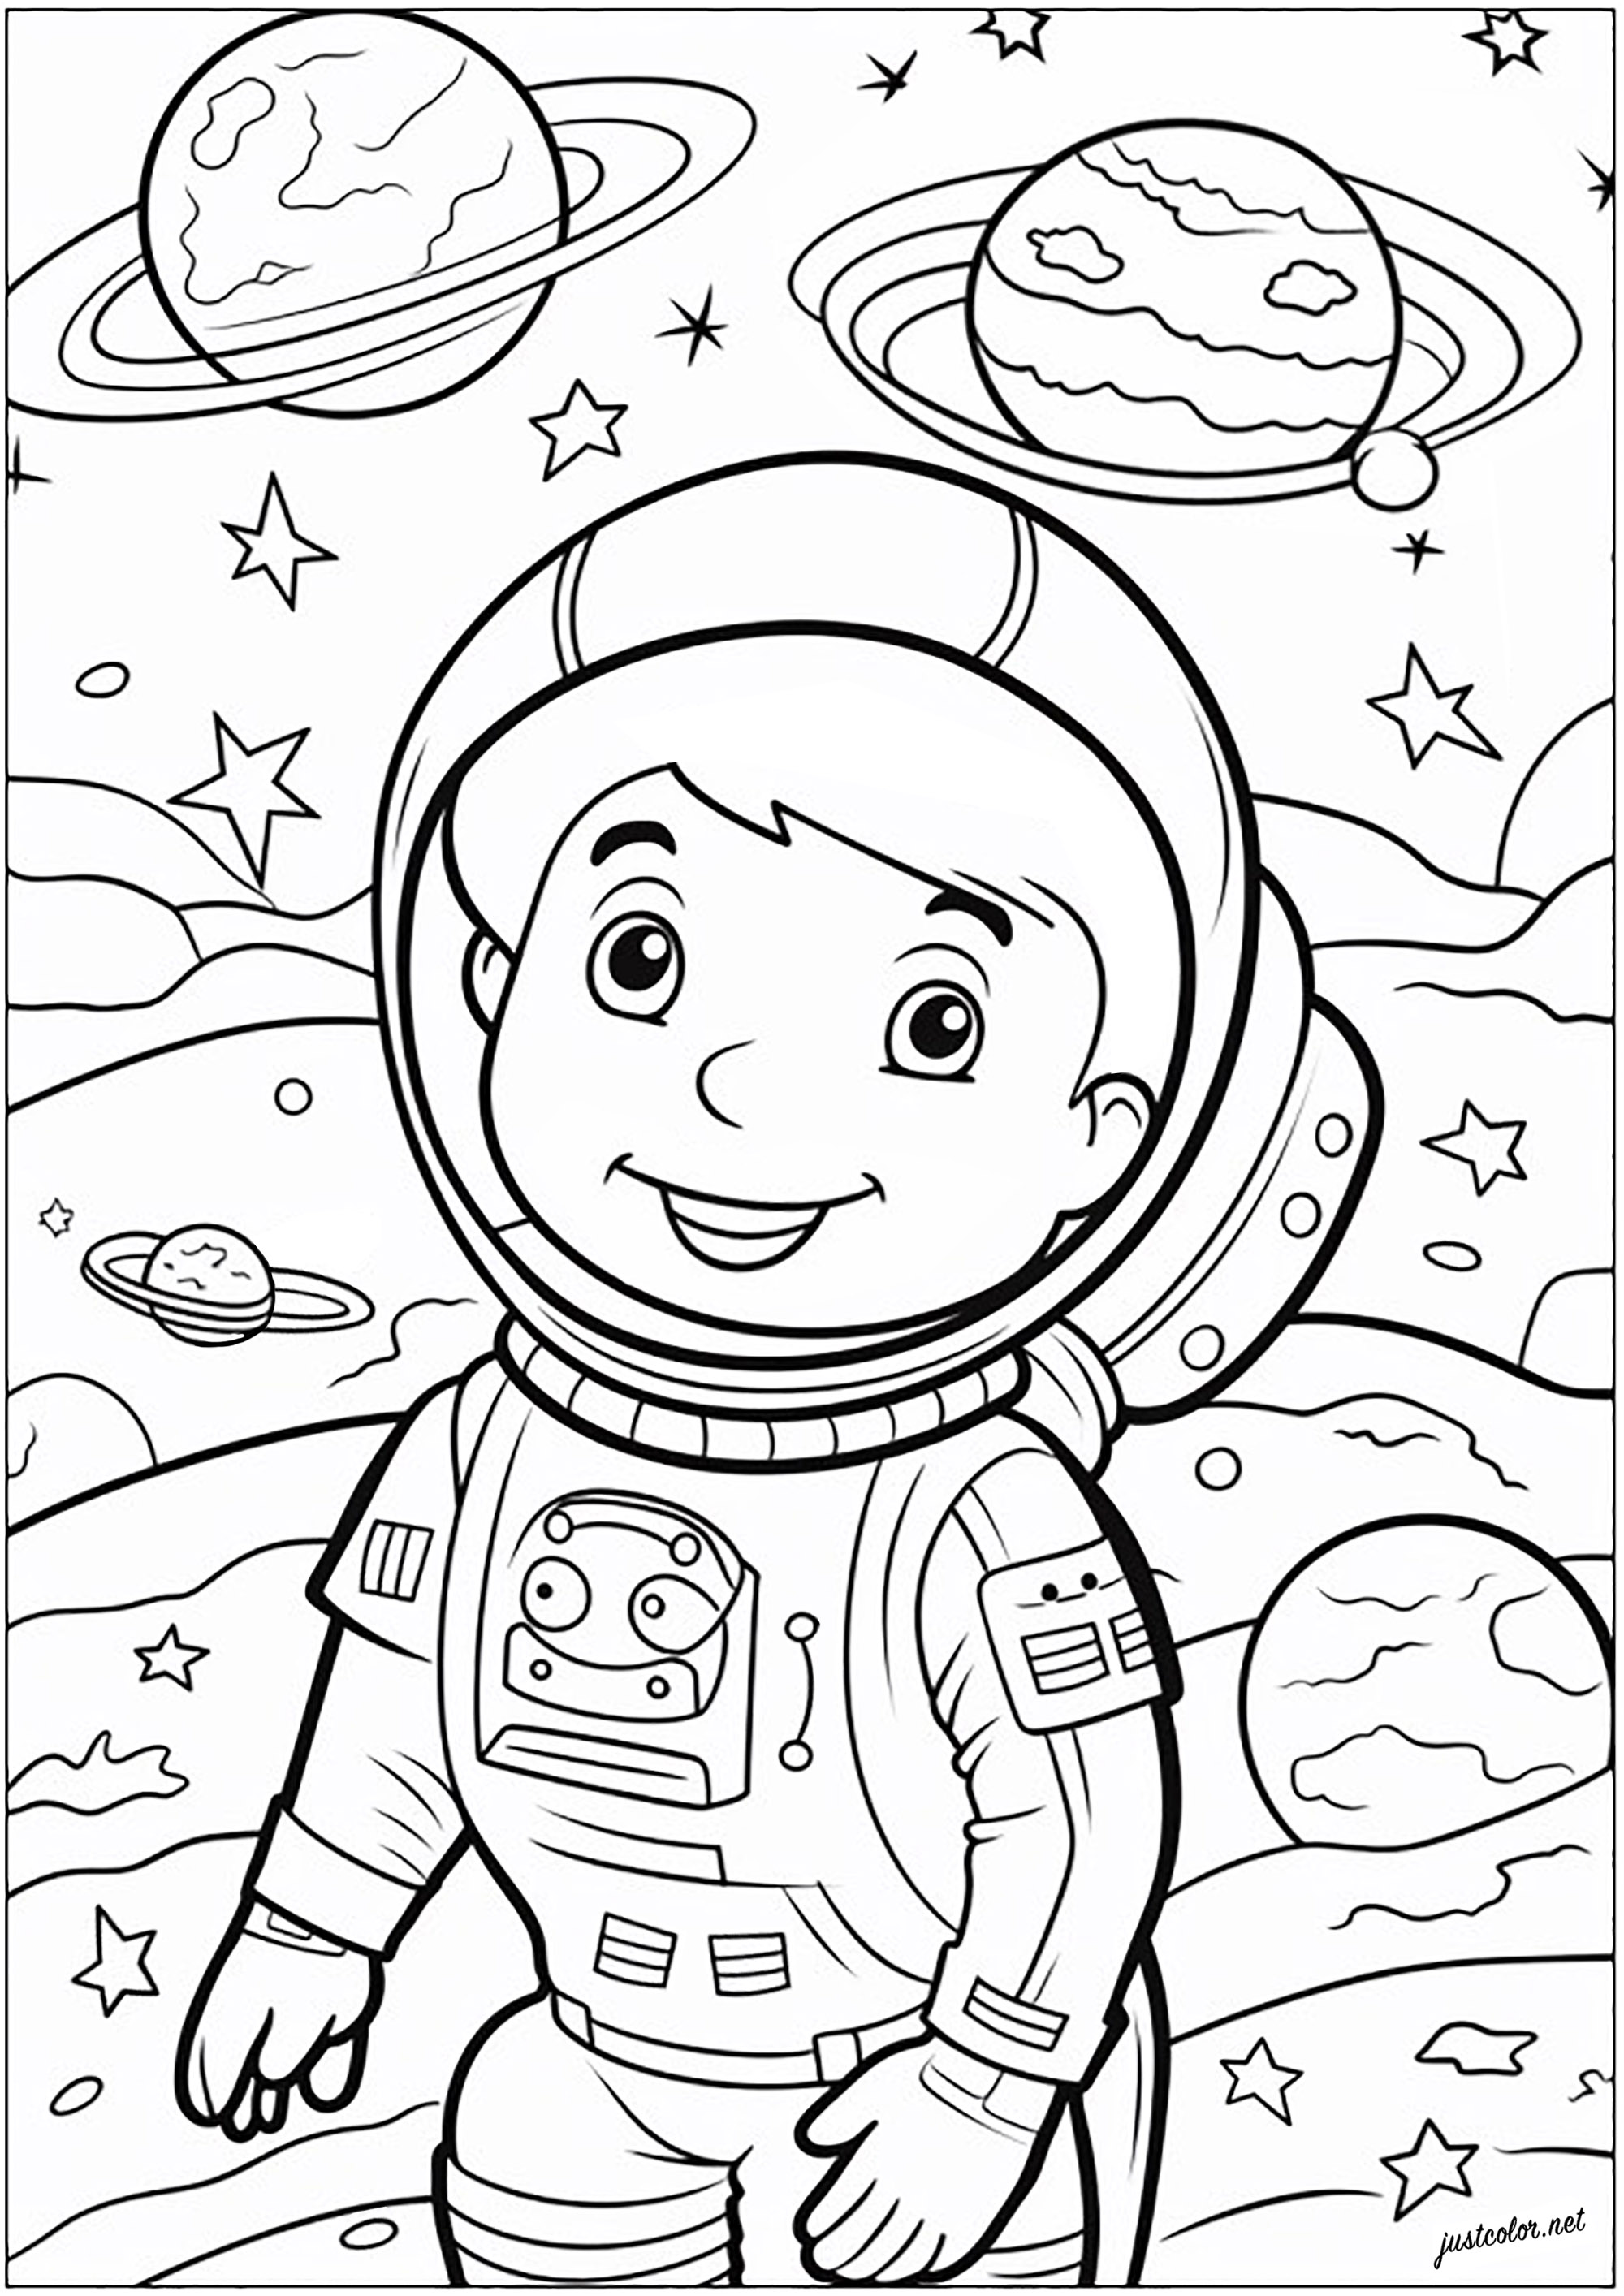 Einen kleinen Astronauten ausmalen. Junge Astronautin im Weltraum, die zwischen Sternen und Planeten schwebt